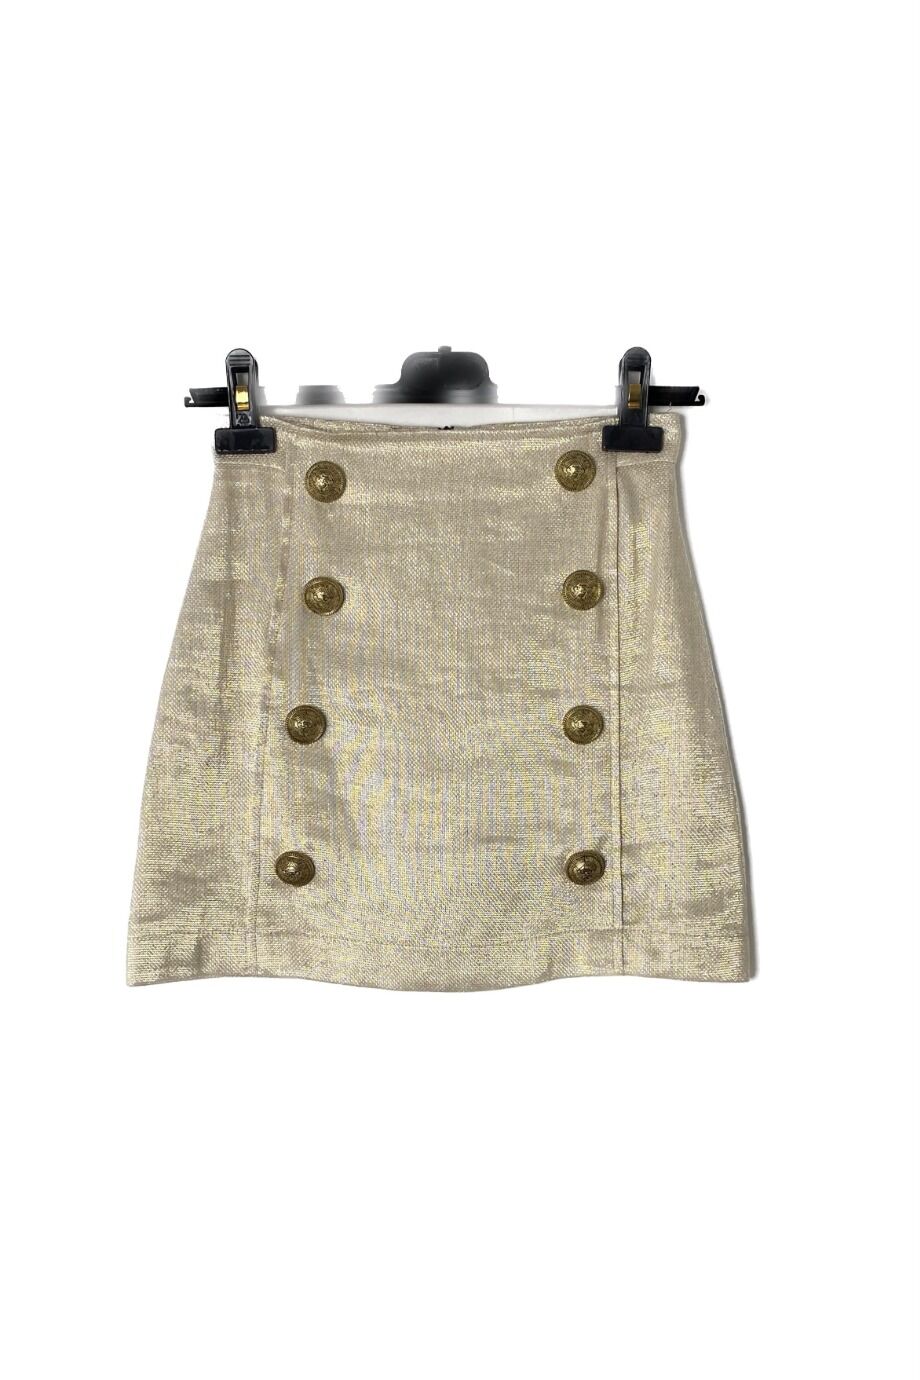 image 1 Детская юбка золотистого цвета с пуговицами